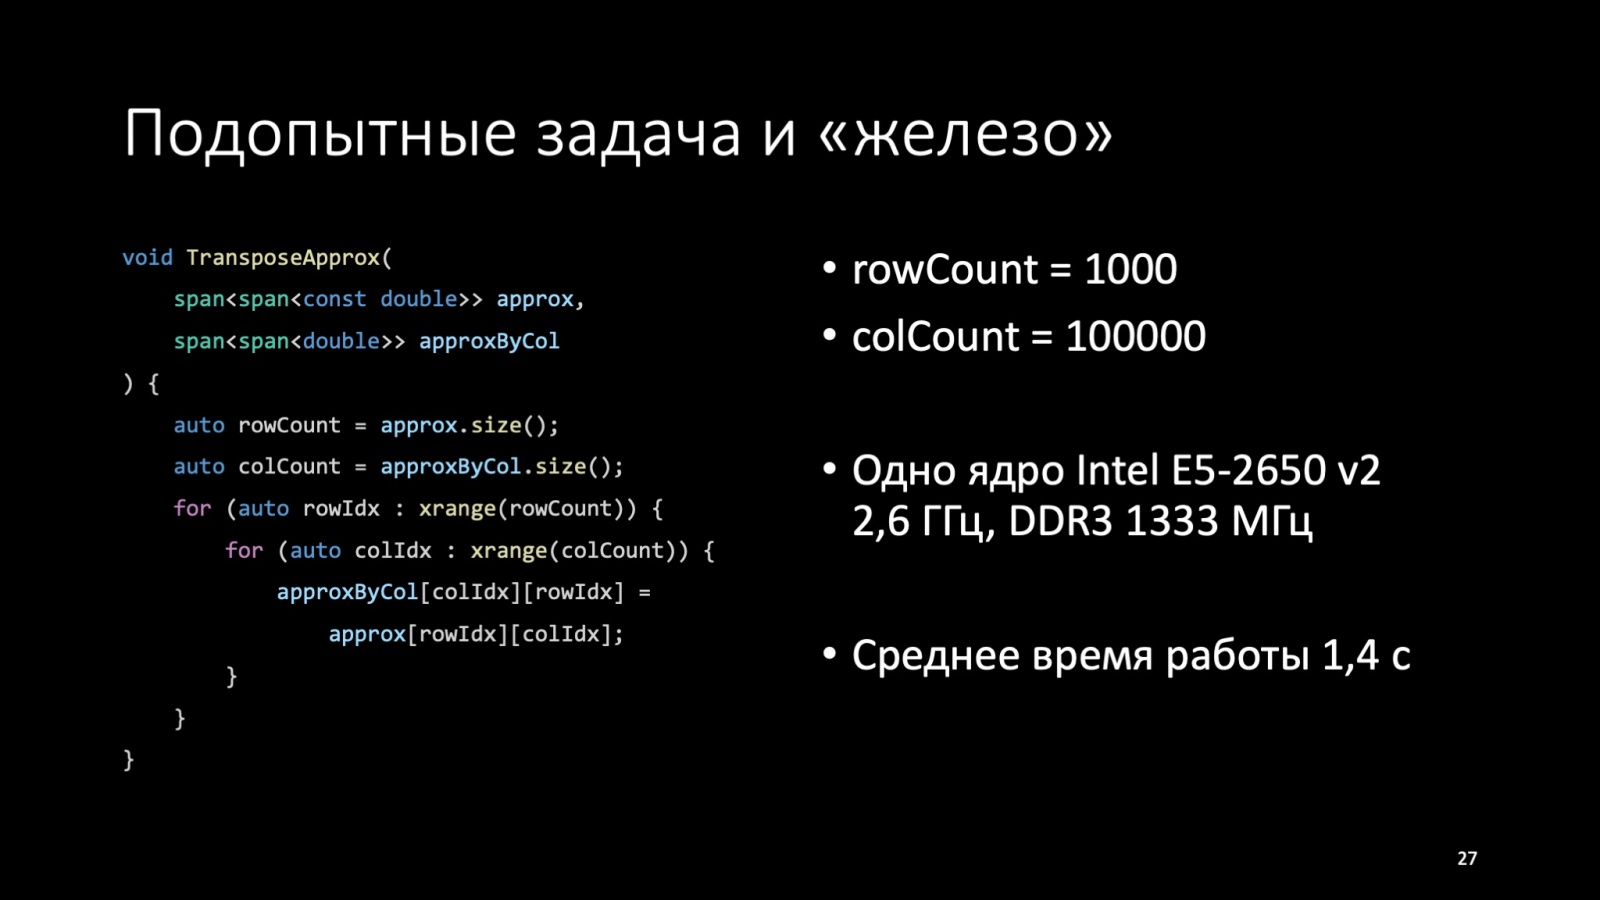 Оптимизация C++: совмещаем скорость и высокий уровень. Доклад Яндекса - 27